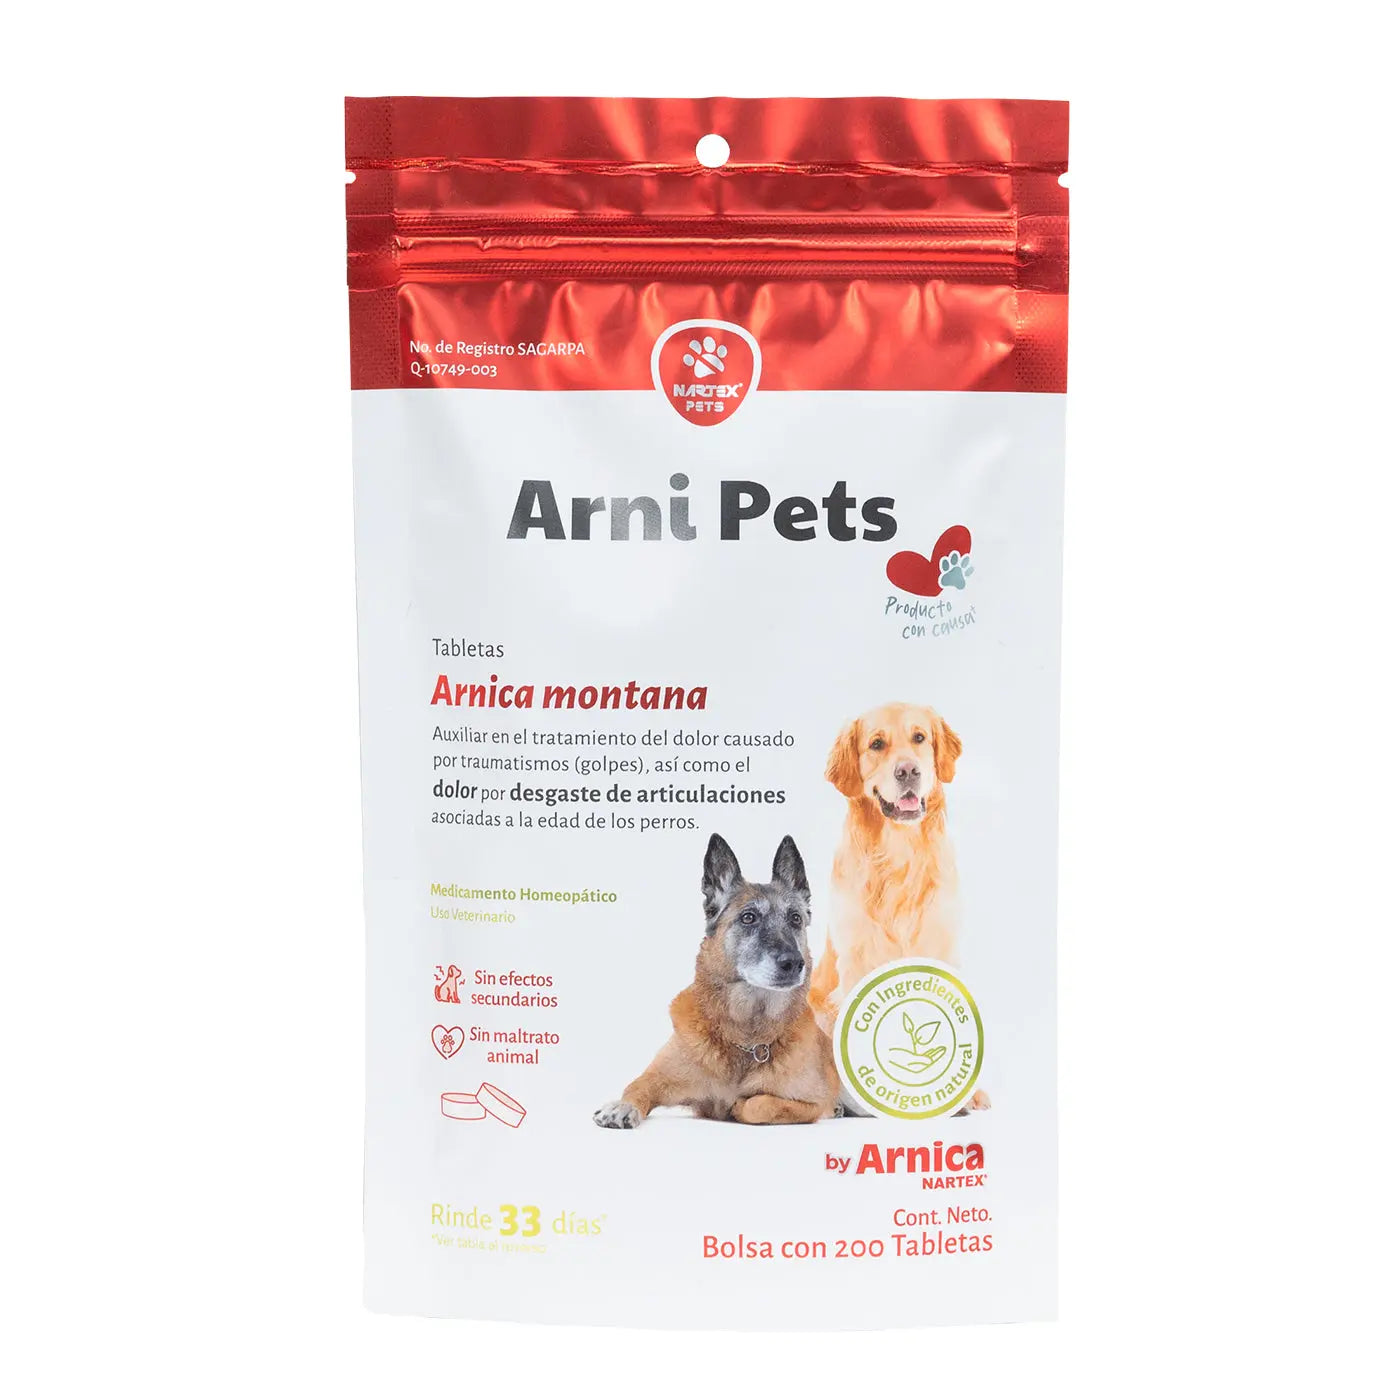 Arni Pets Tabletas con Árnica Montana - Nartex Nartex